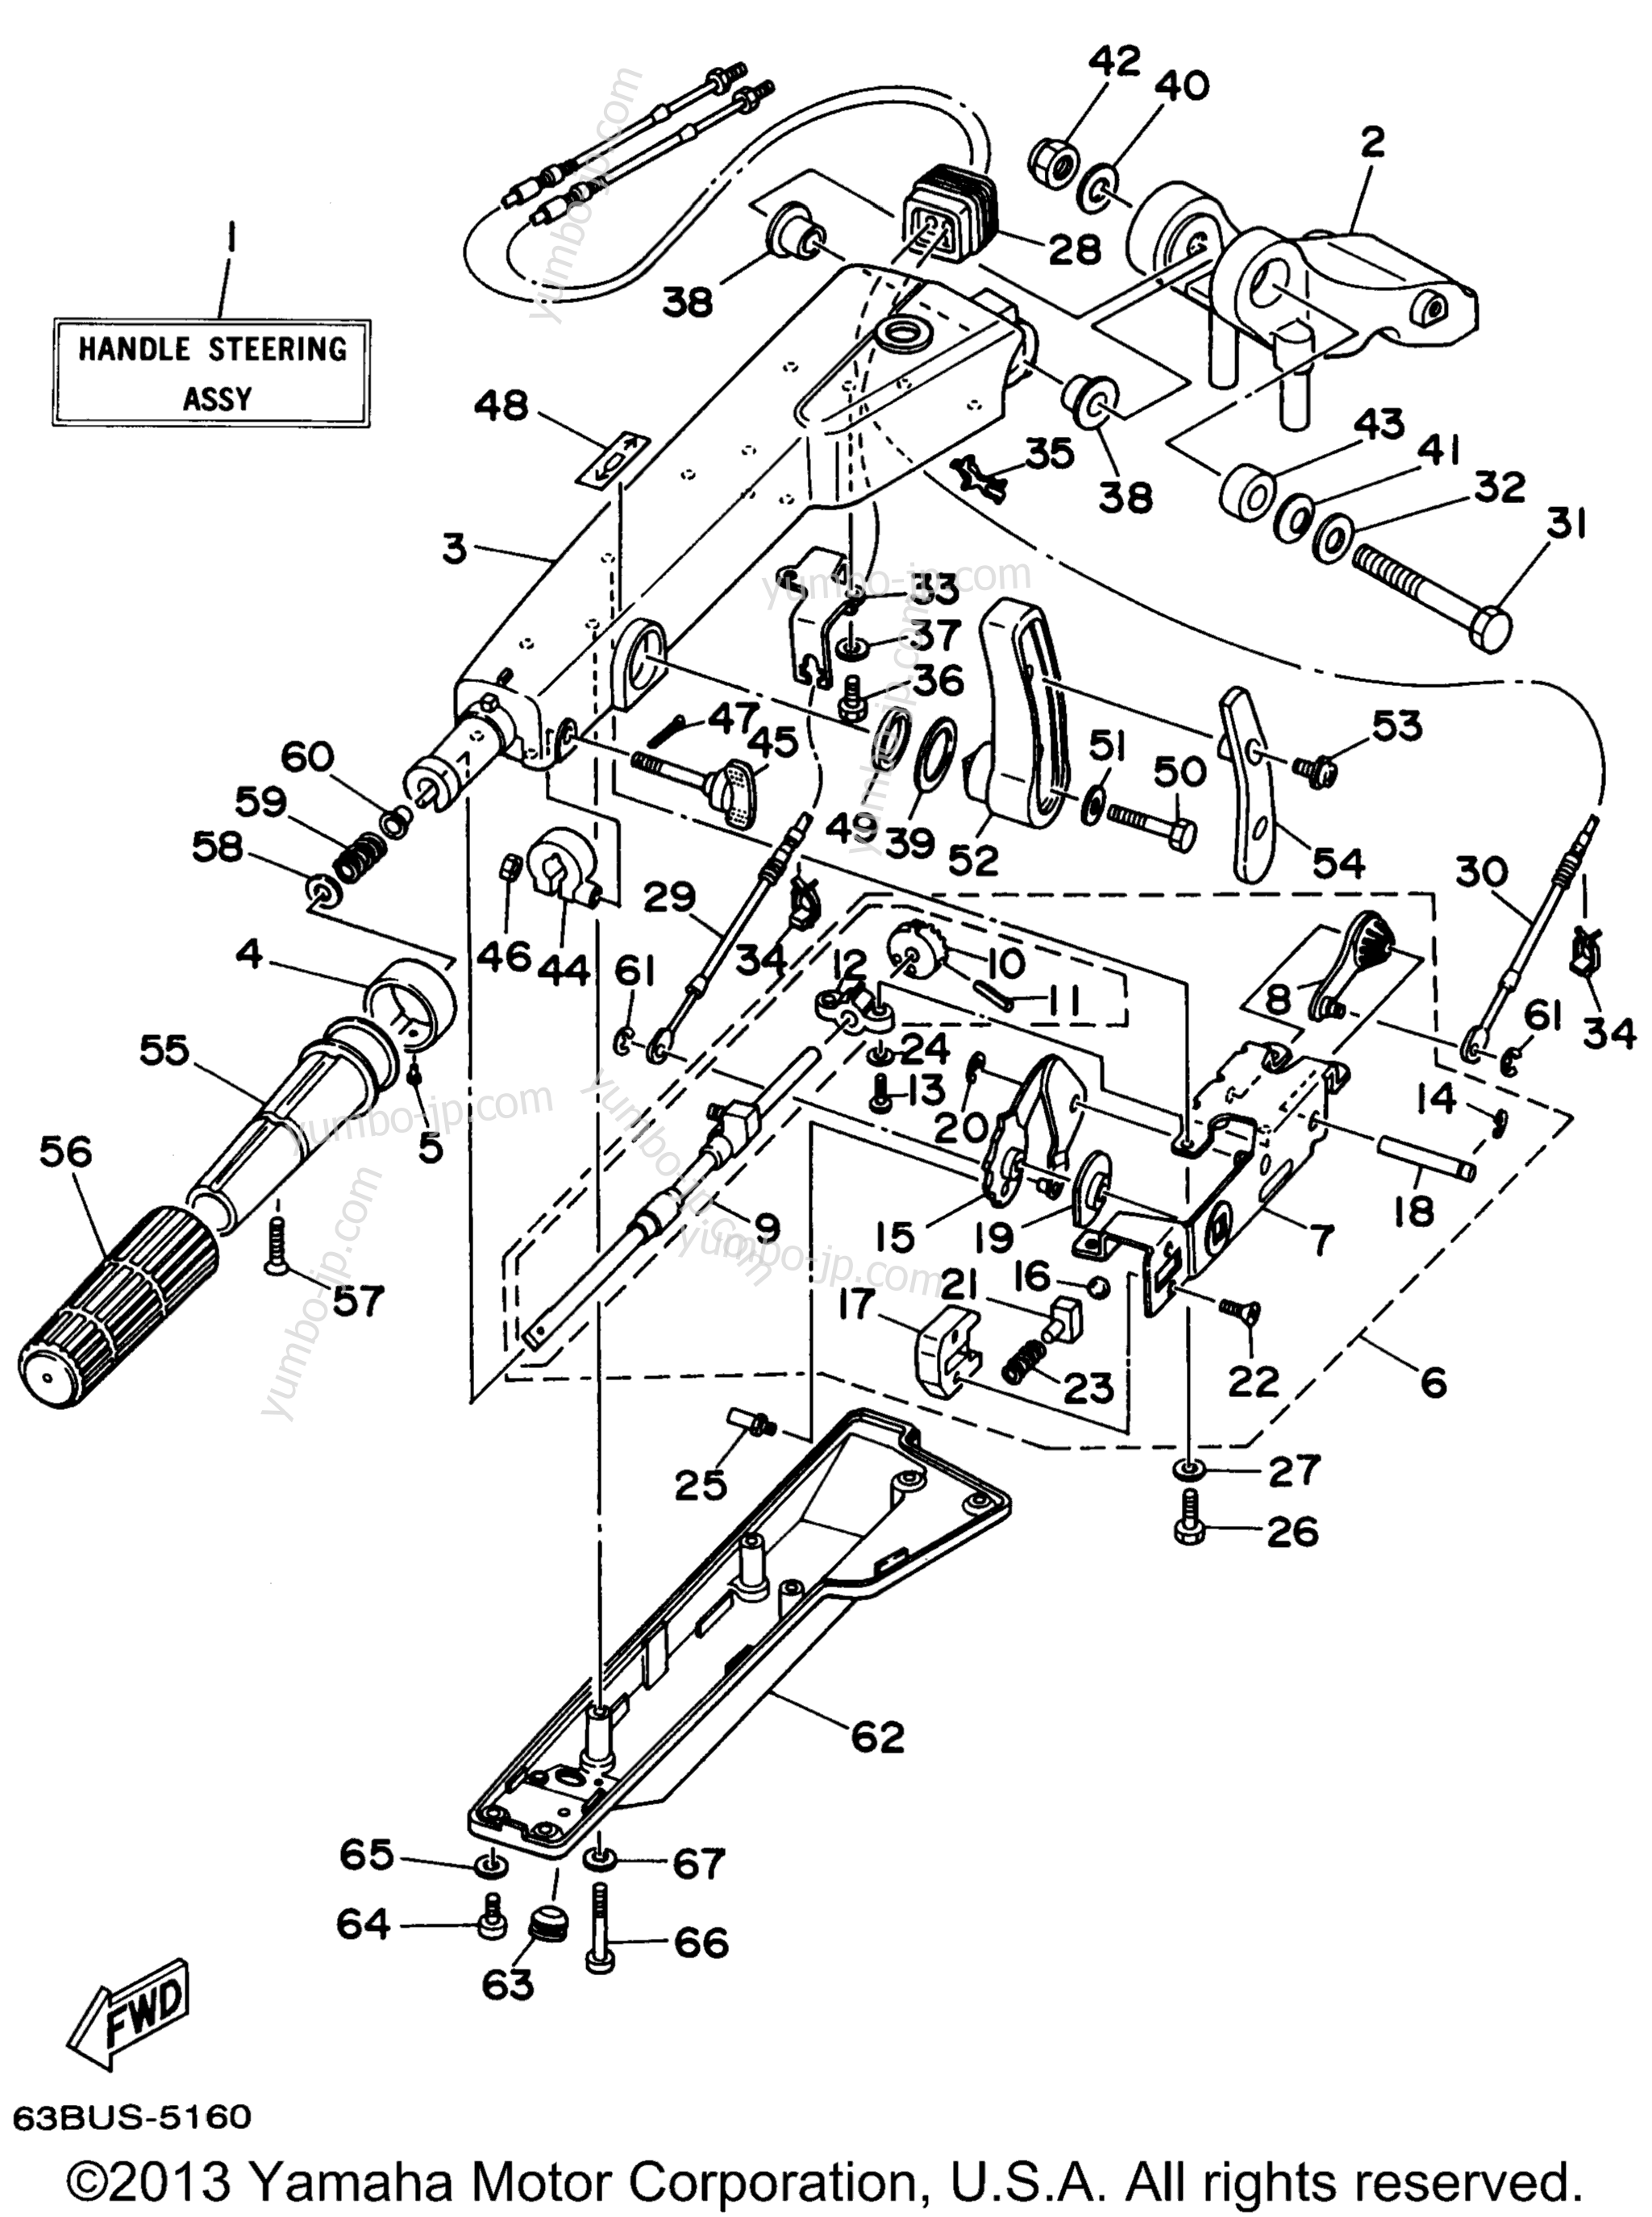 Steering для лодочных моторов YAMAHA P40EJRW_THLW (40ESRW) 1998 г.